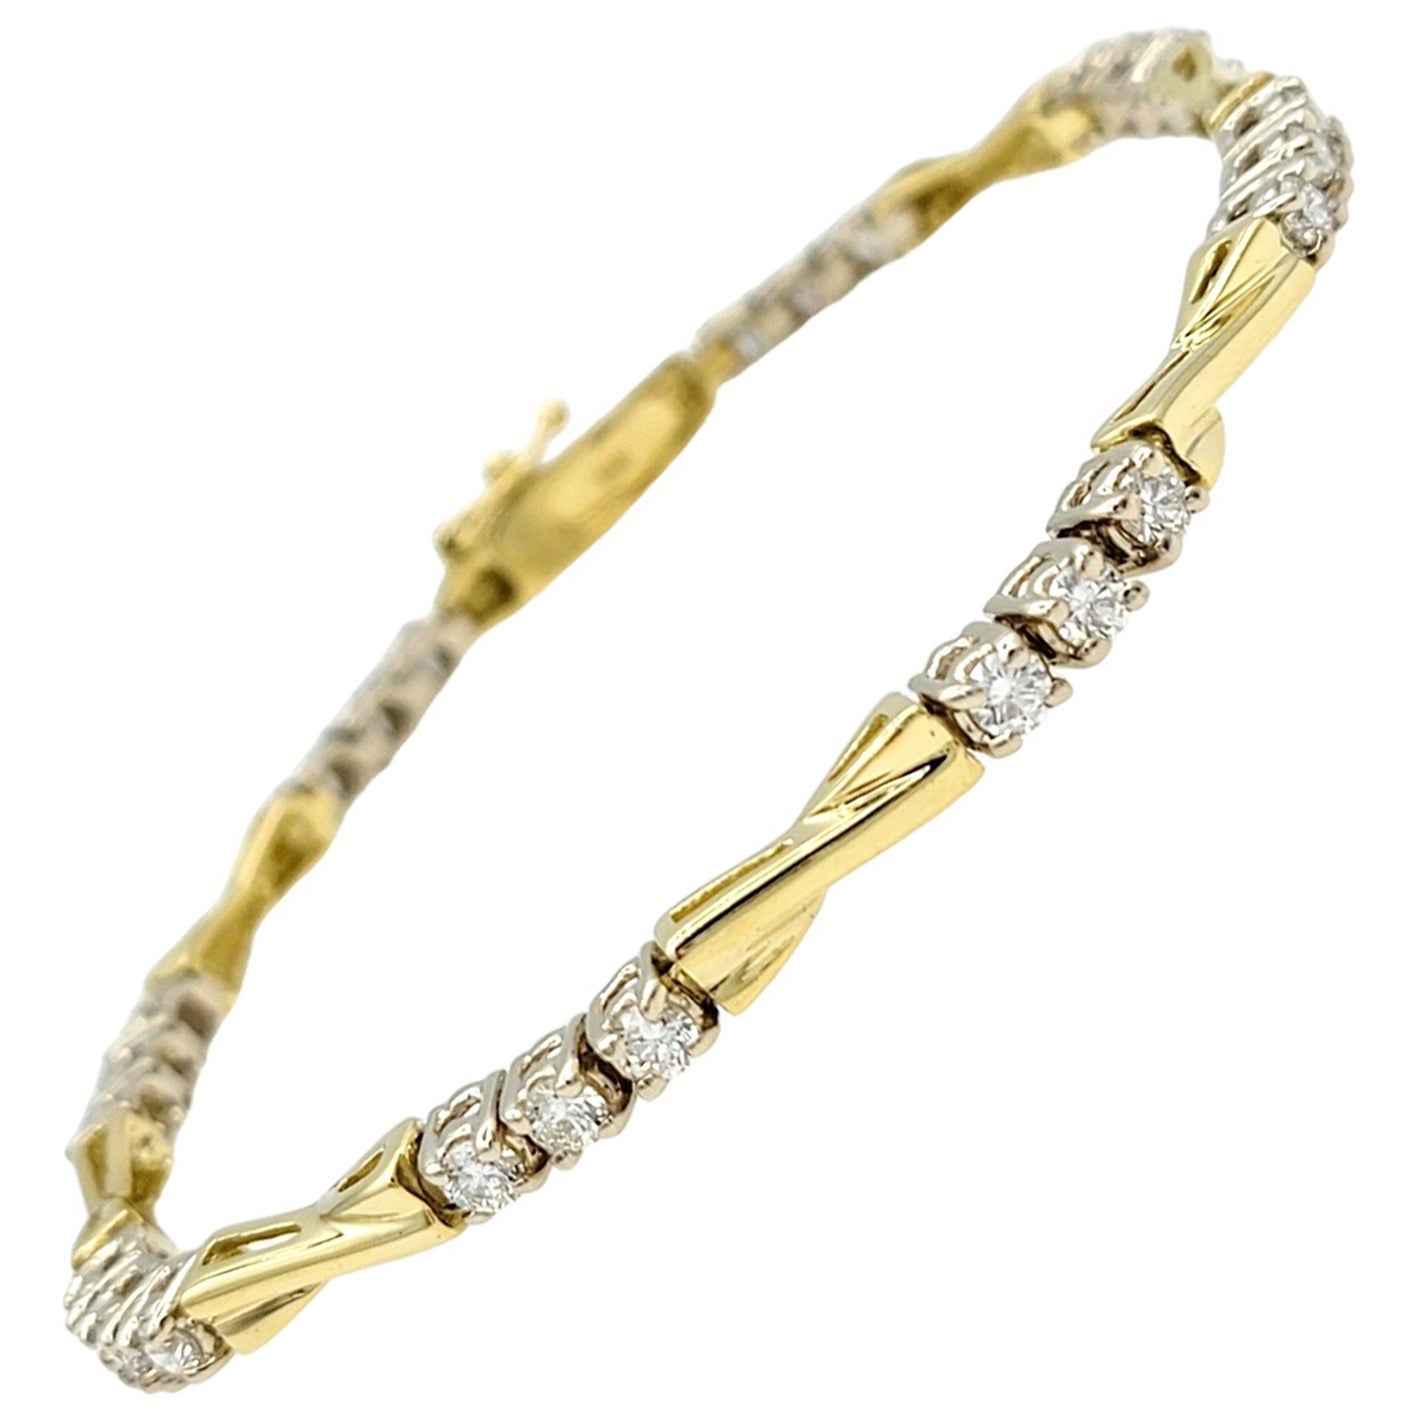 Armband aus 18 Karat Gelbgold mit abwechselnd runden Diamanten und länglichem X-Gliederarmband